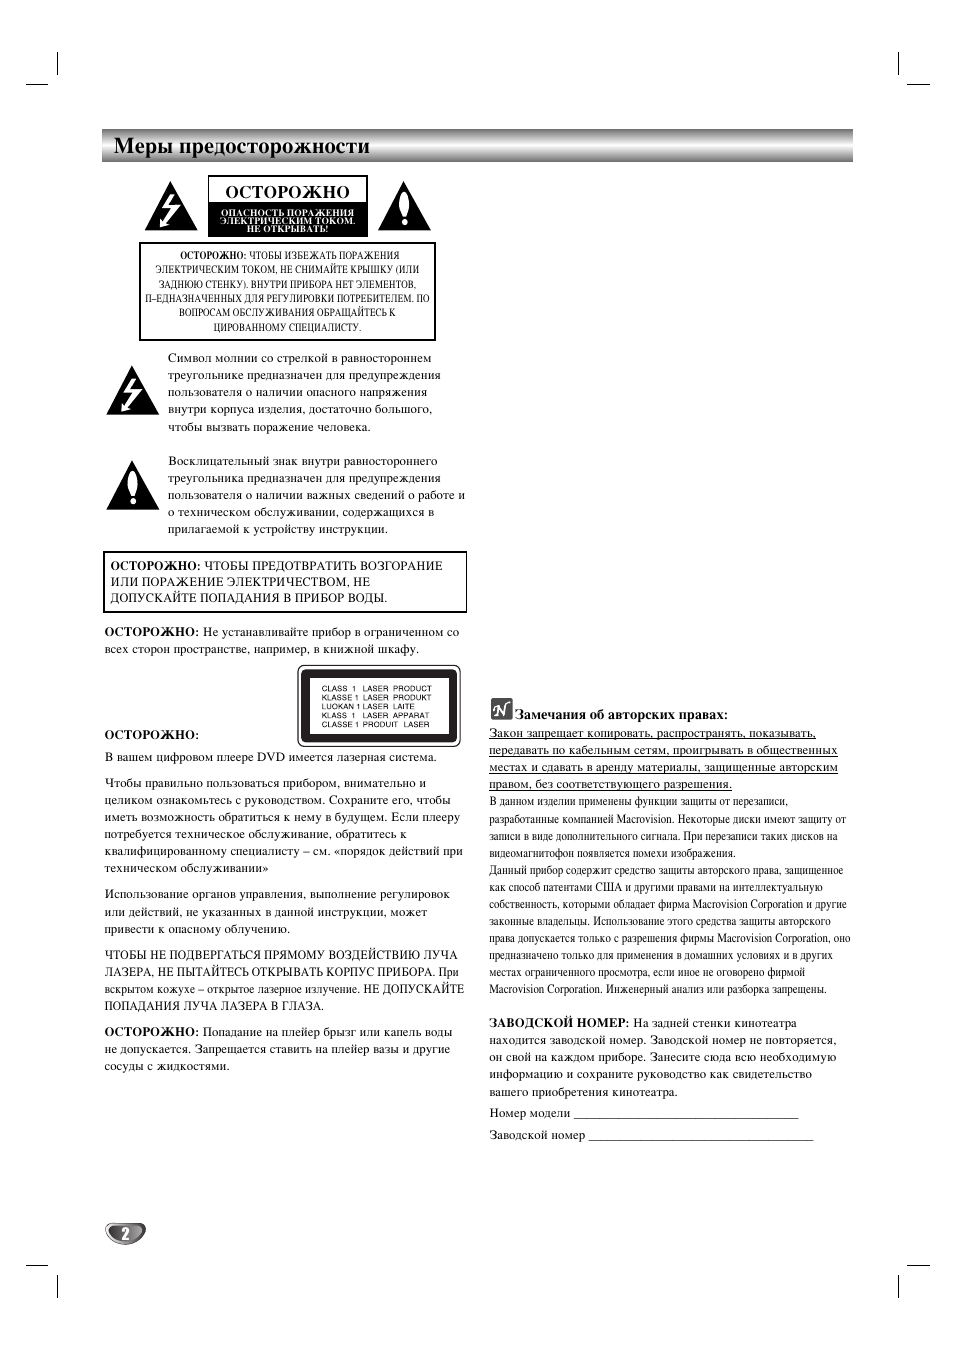 Меры предосторожности, Осторожно, I замечания об авторских правах | Инструкция по эксплуатации LG LH-D6530 | Страница 2 / 36